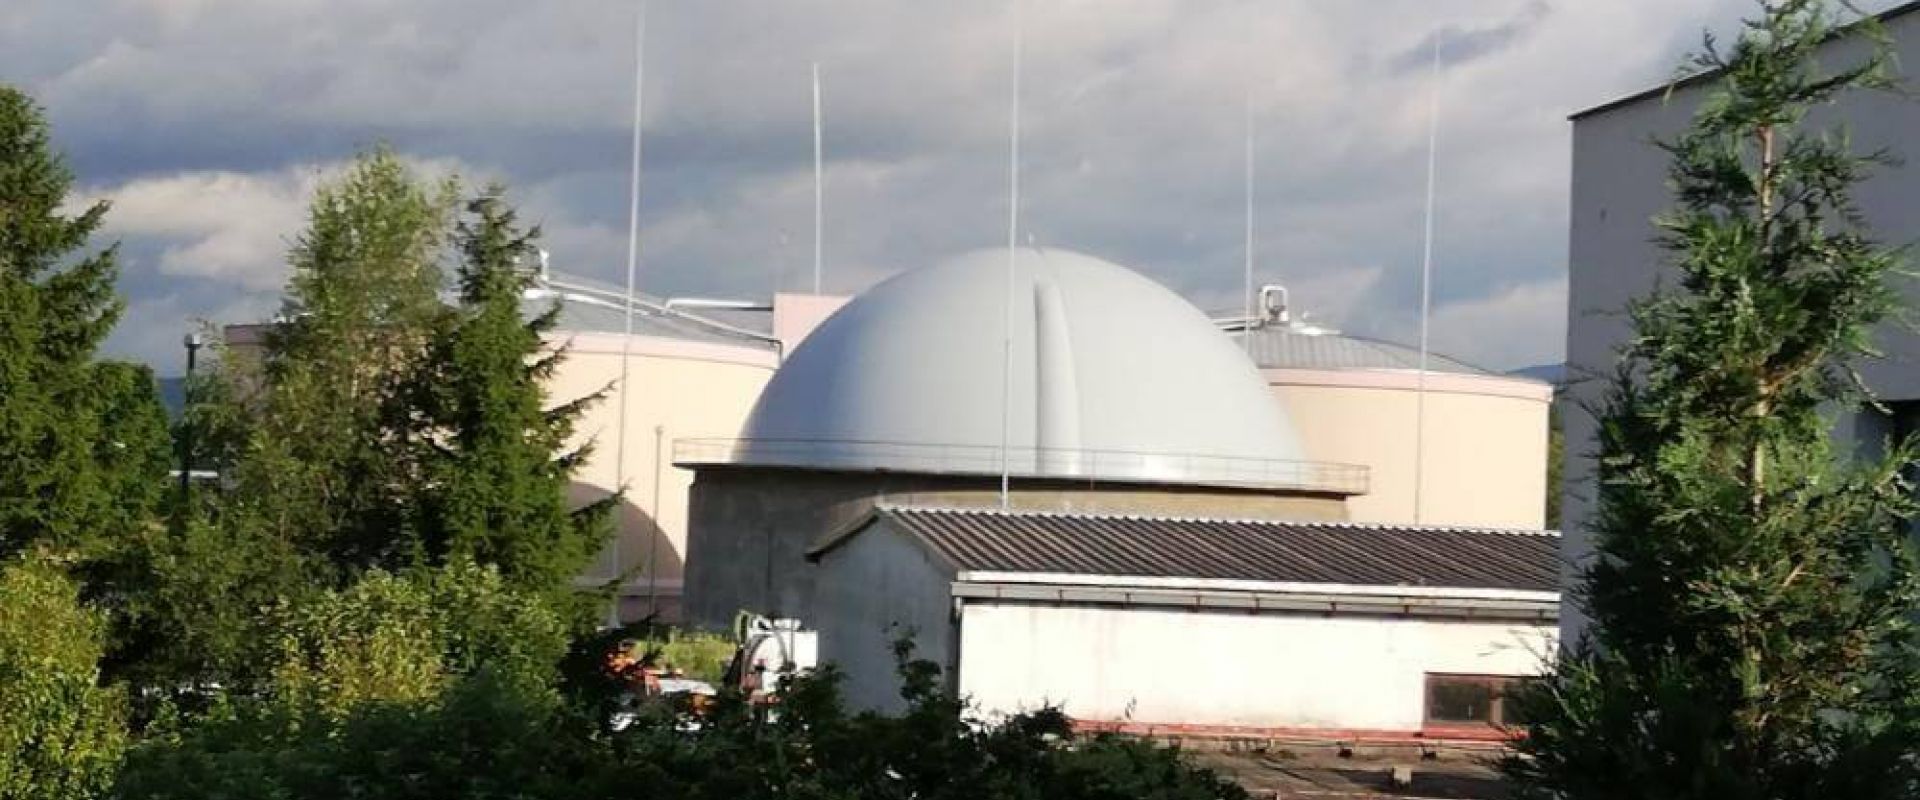 Rezervoar za biogas Butila